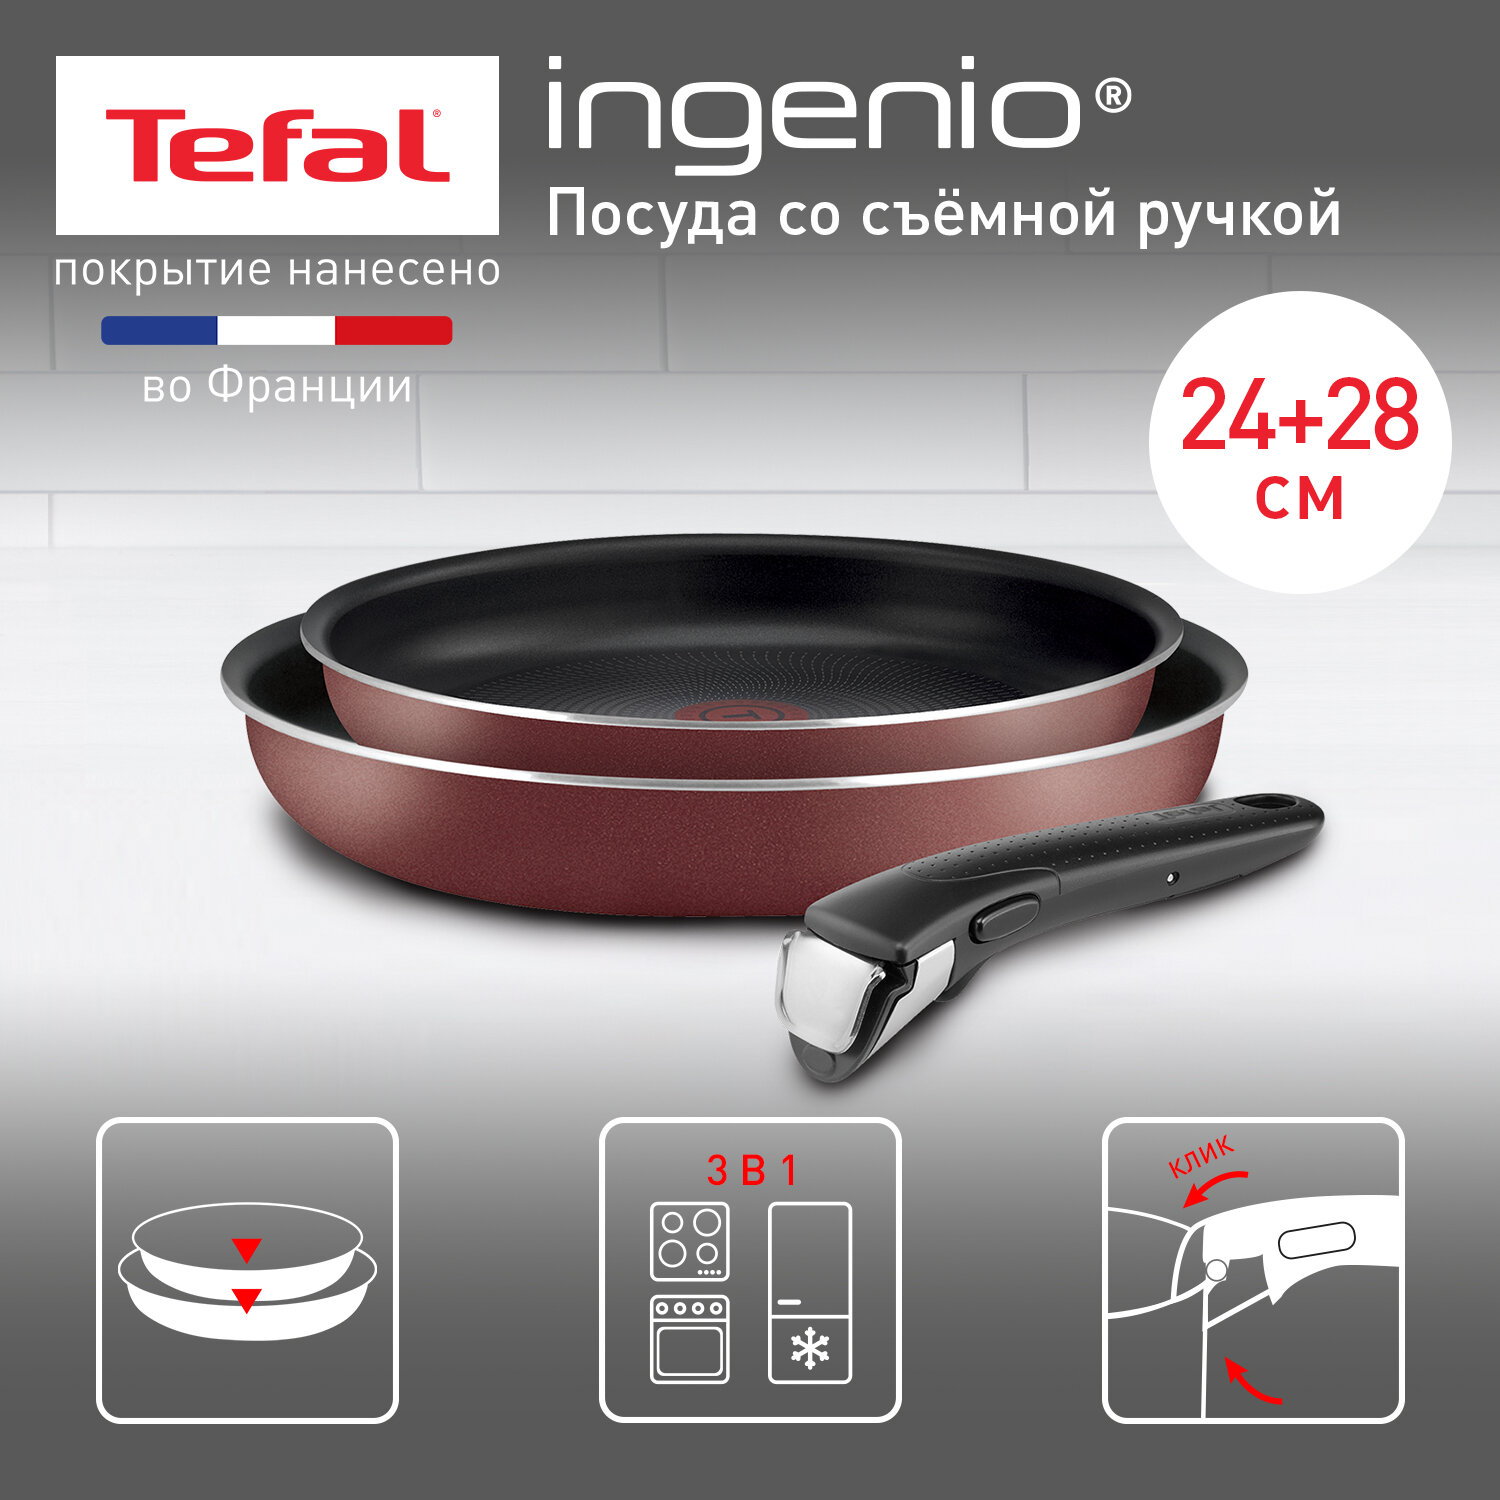 Набор посуды со съемной ручкой Tefal Ingenio RED 5 04175820, 24/28 см, с индикатором температуры и антипригарным покрытием, для газовых, электрических плит